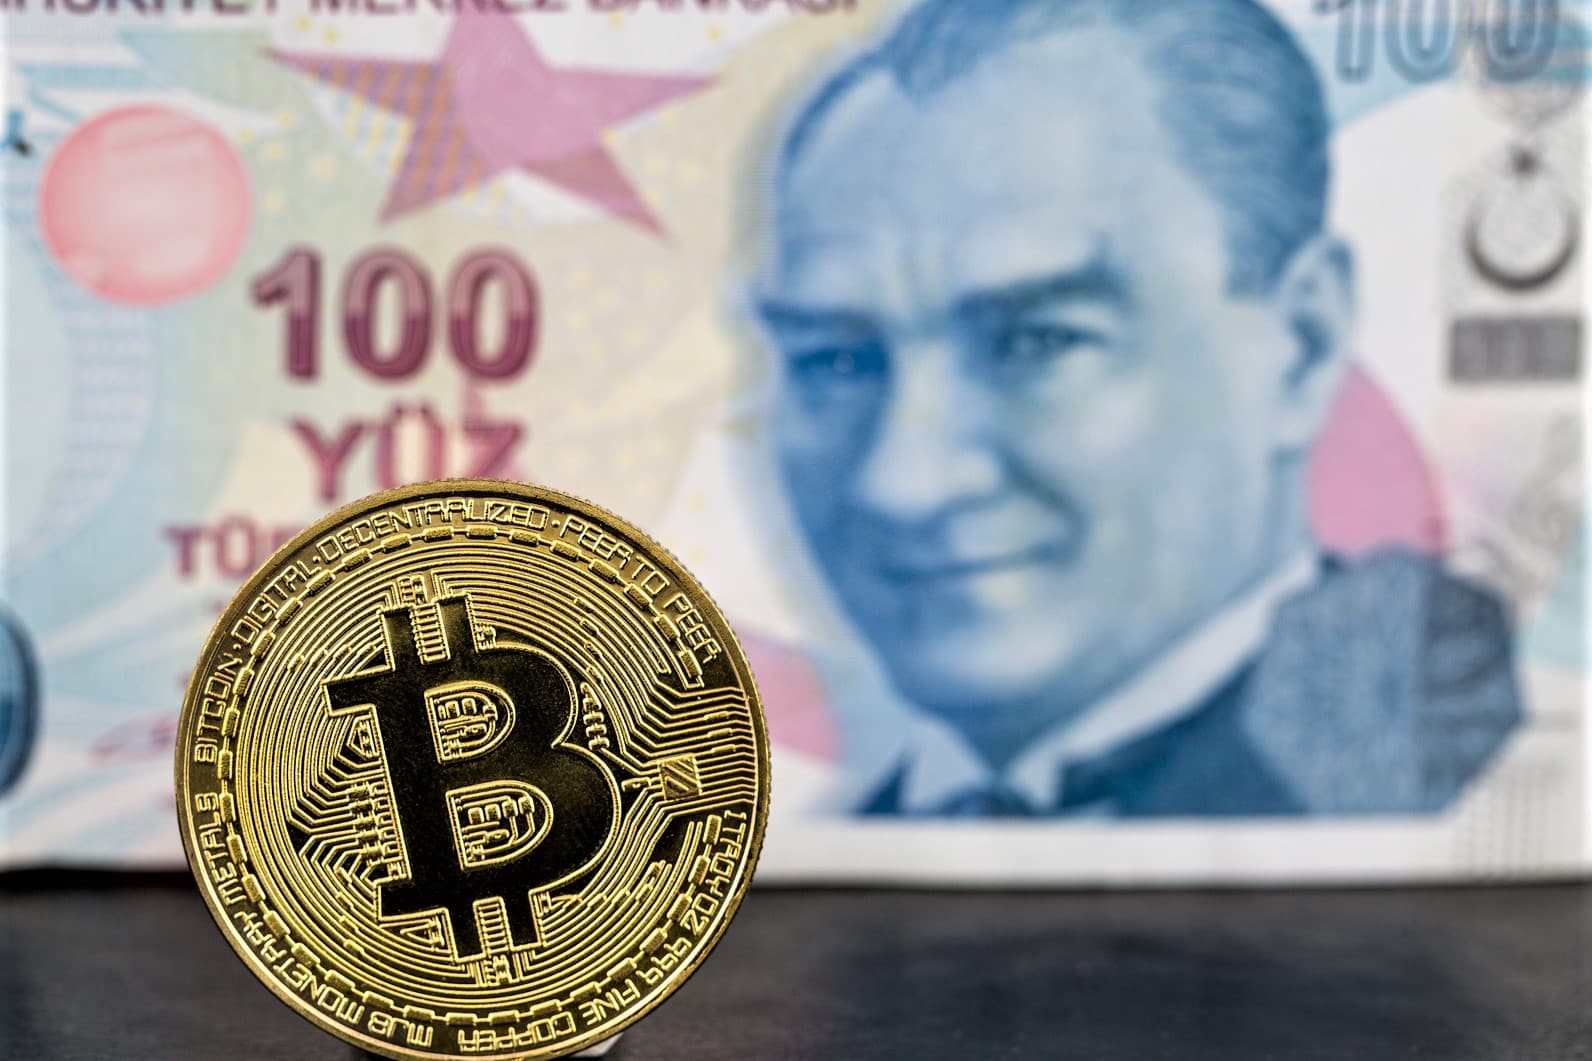 Turkish lira and Bitcoin